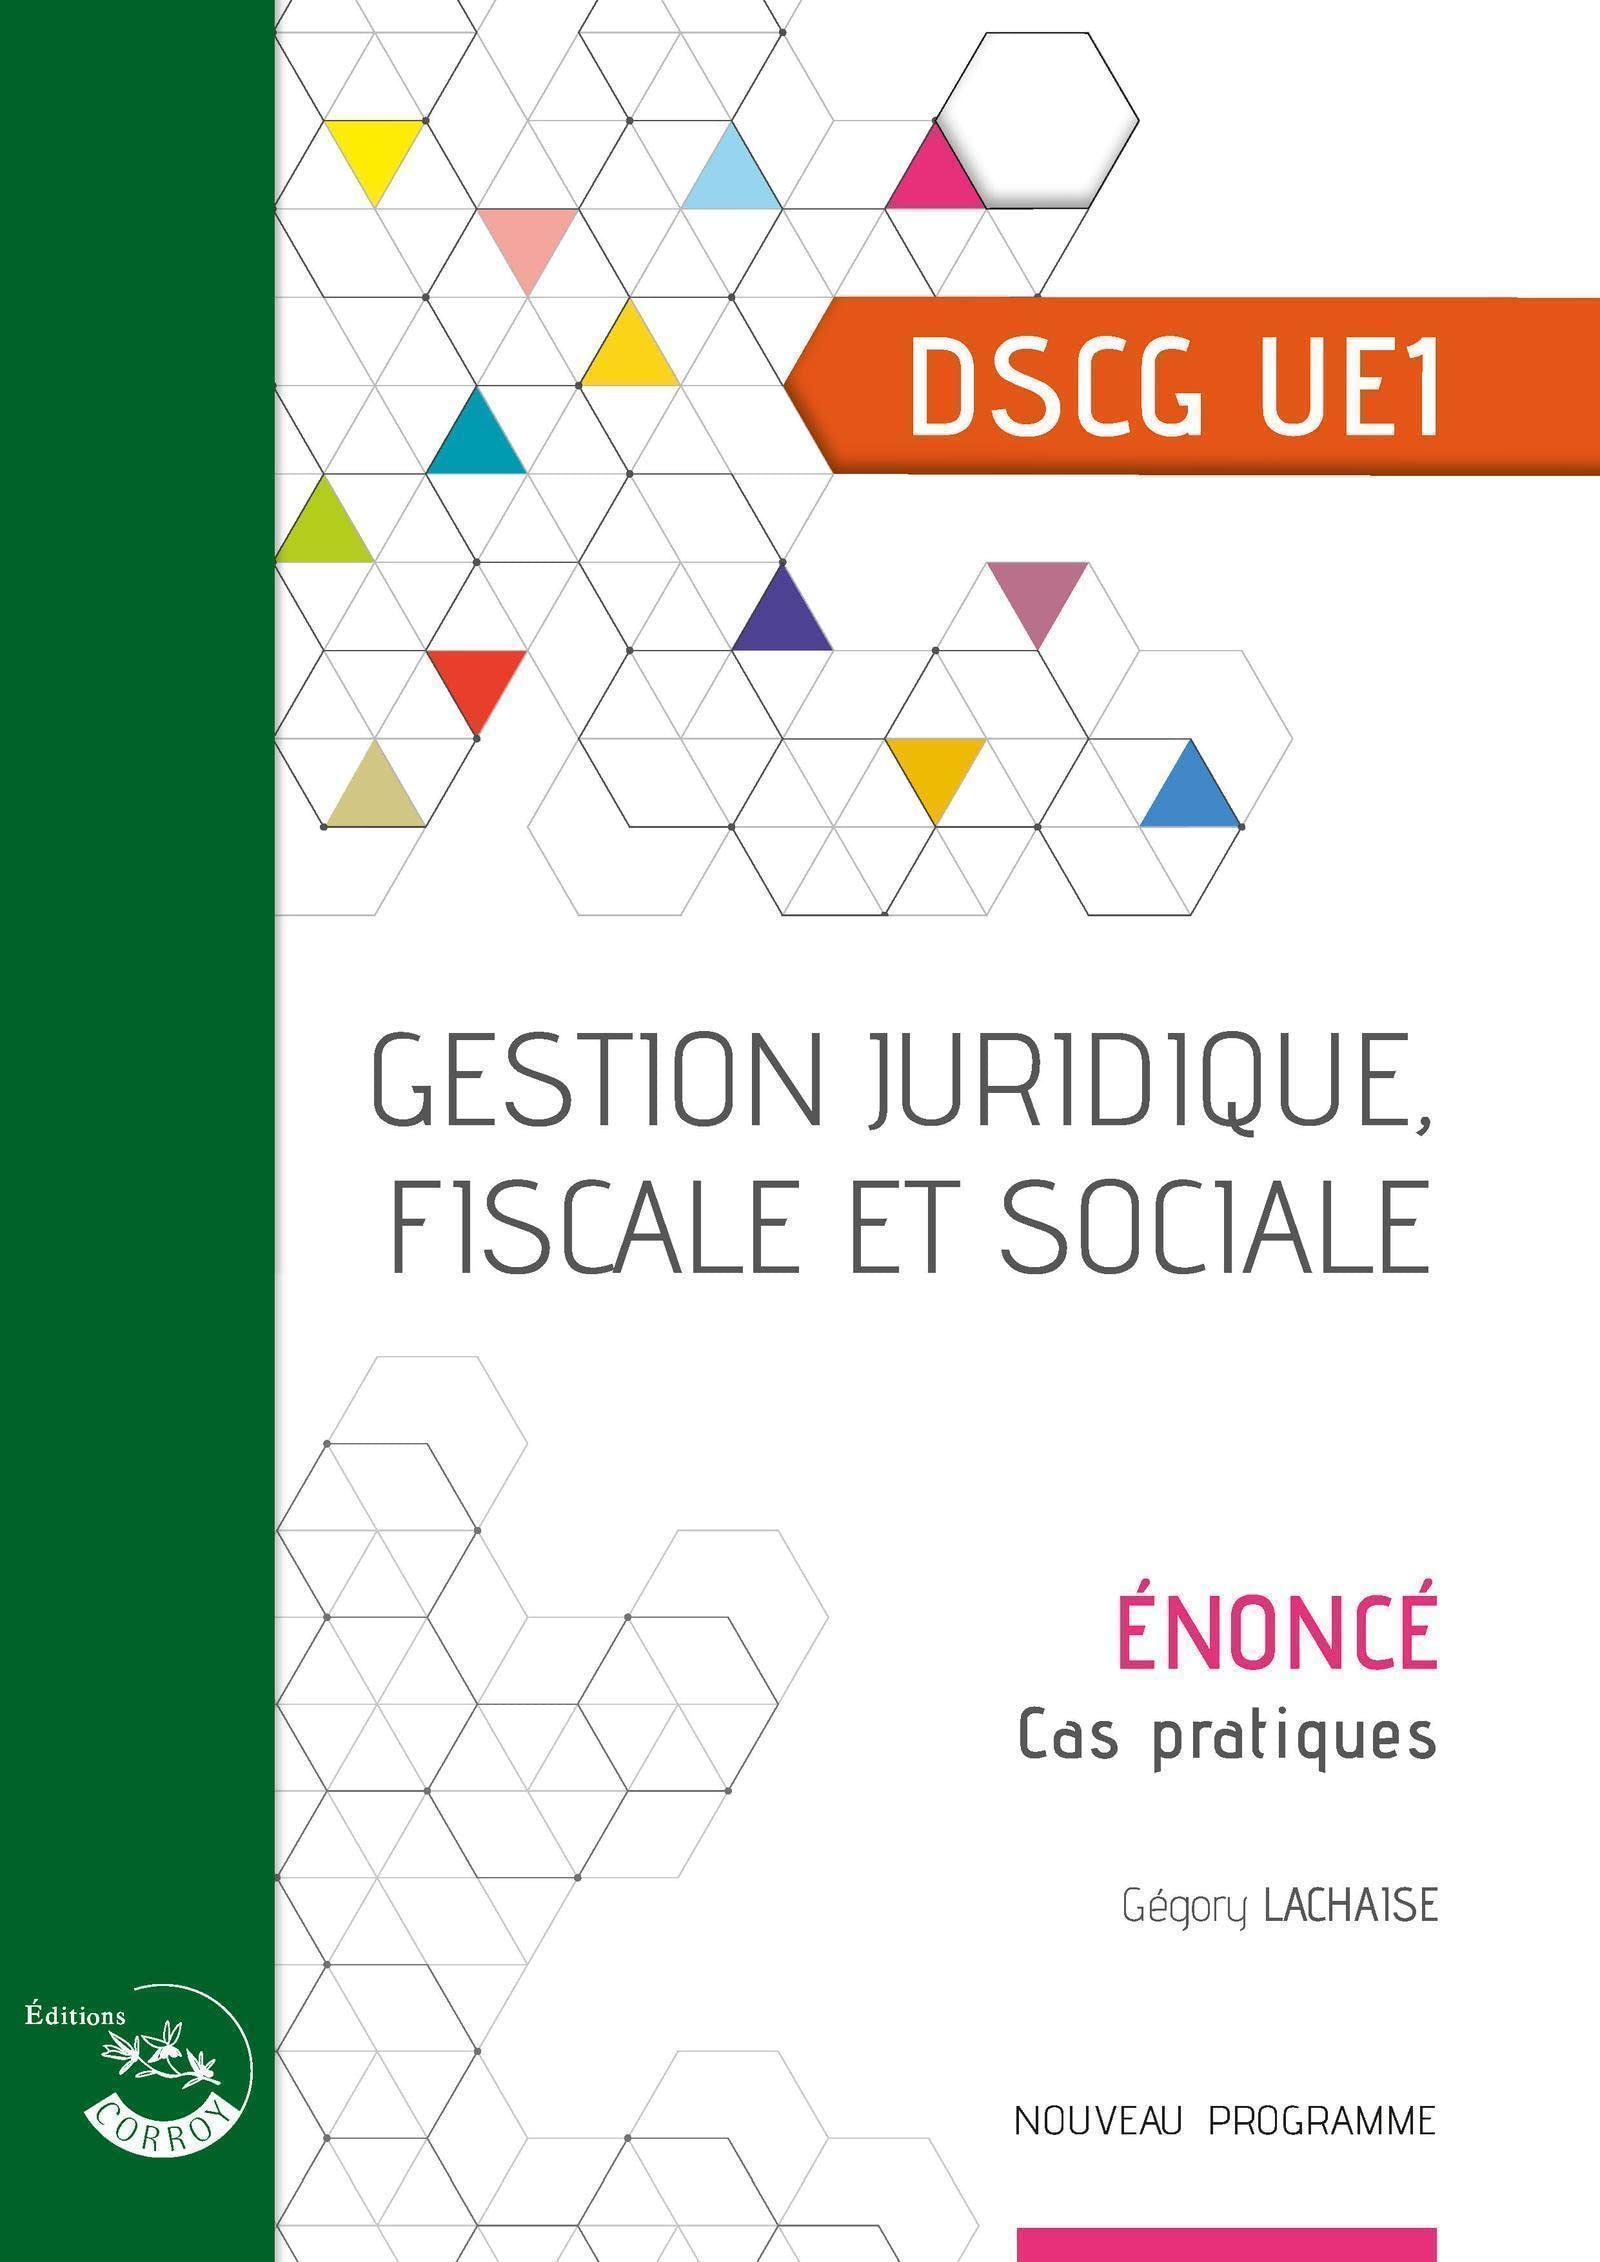 Gestion juridique, fiscale et sociale, DSCG UE1 : énoncé, cas pratiques